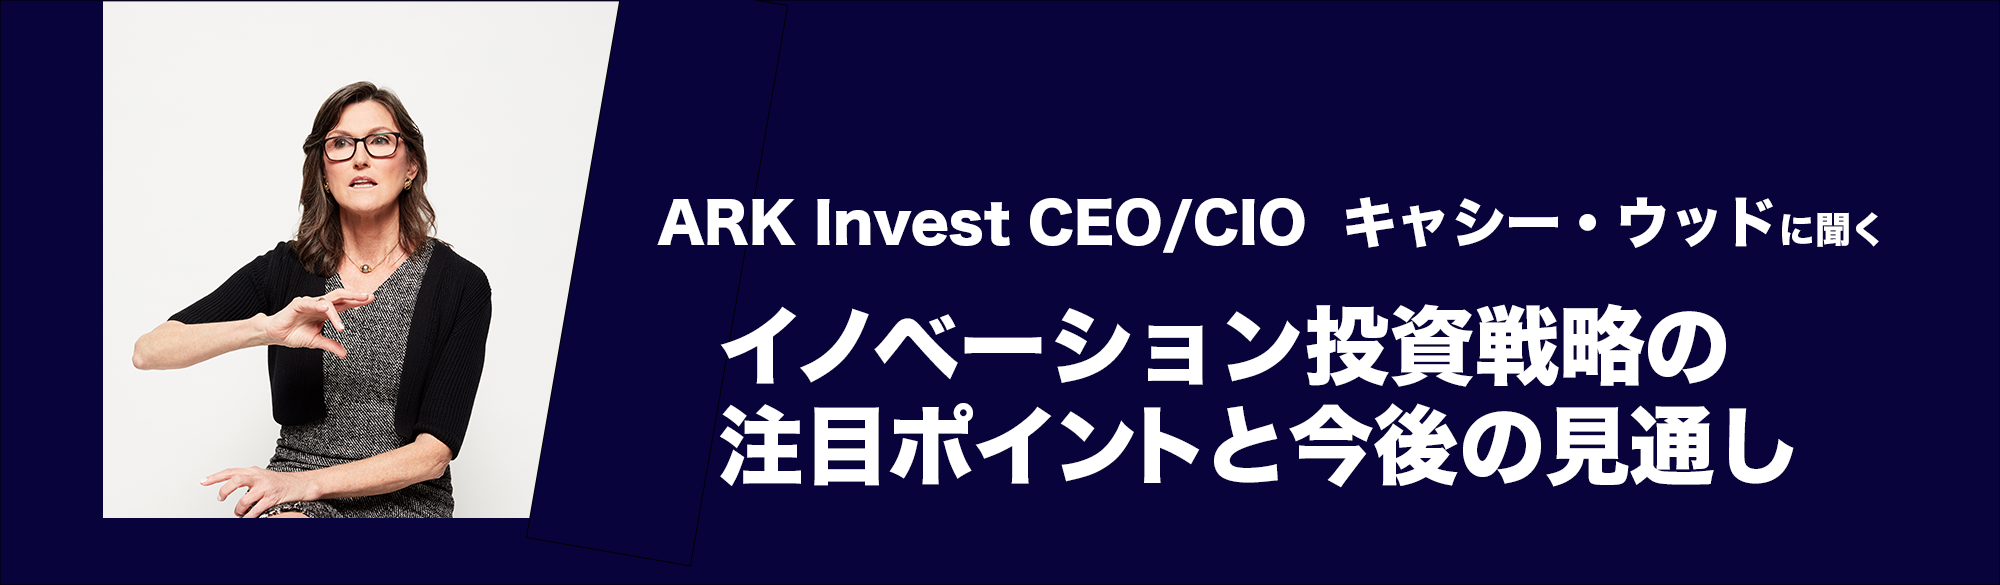 ARK Invest キャシー・ウッドに聞く イノベーション投資戦略の注目ポイントと今後の見通し